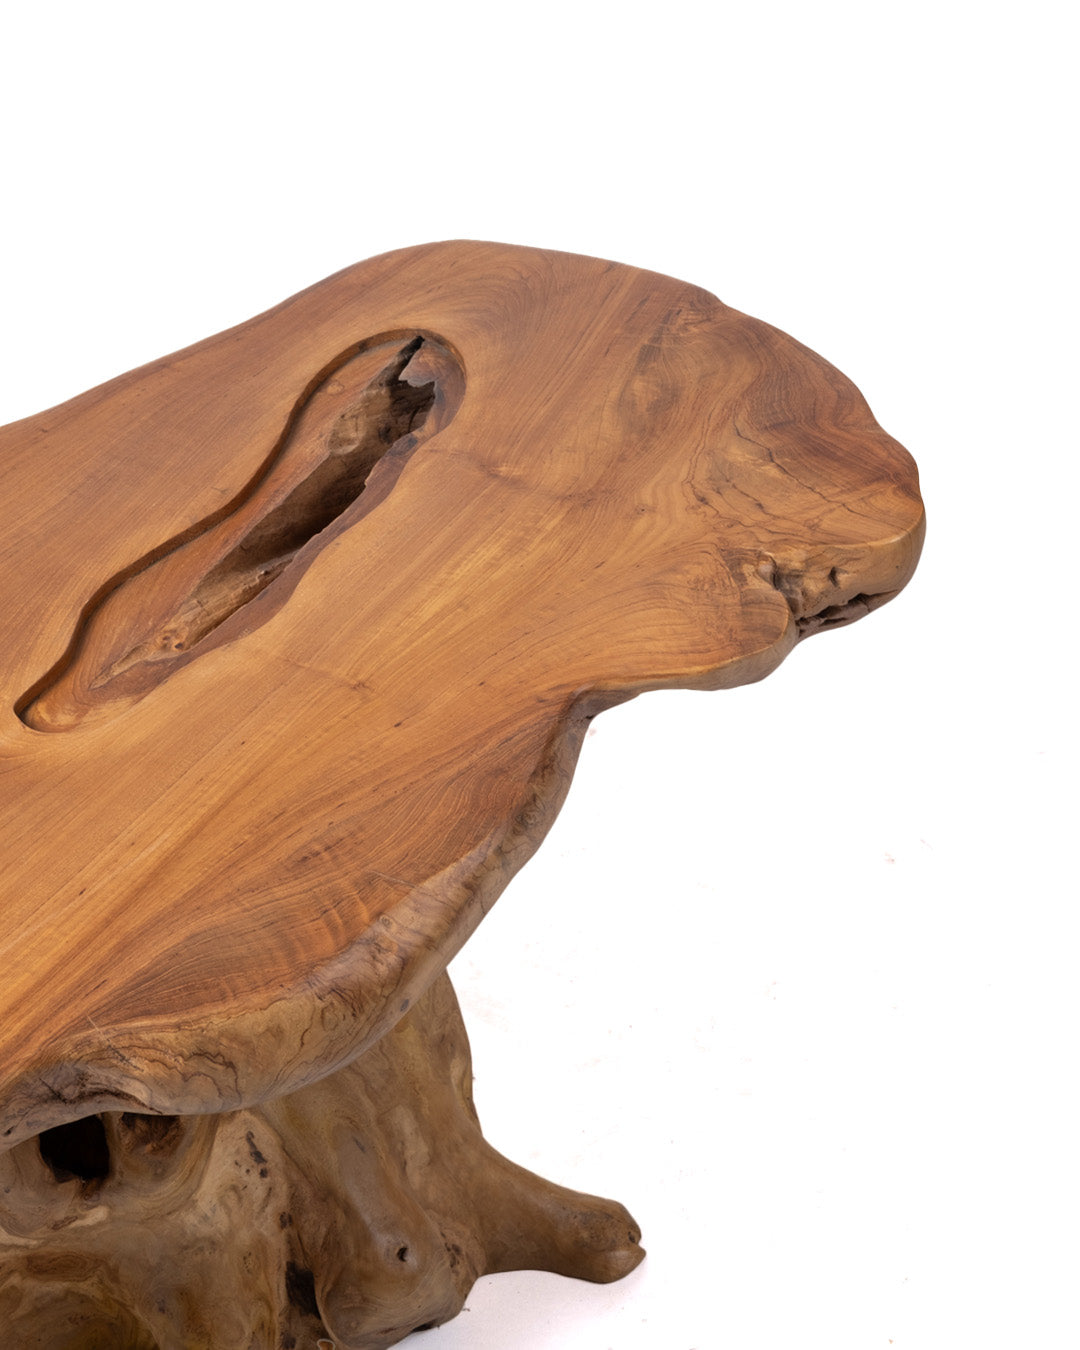 ULTIMA UNIDAD DISPONIBLE! Mesa de centro de madera maciza natural de teca Maratua, hecha a mano con acabado natural, 47 cm Alto 108 cm Largo 54 cm Profundidad, origen Indonesia